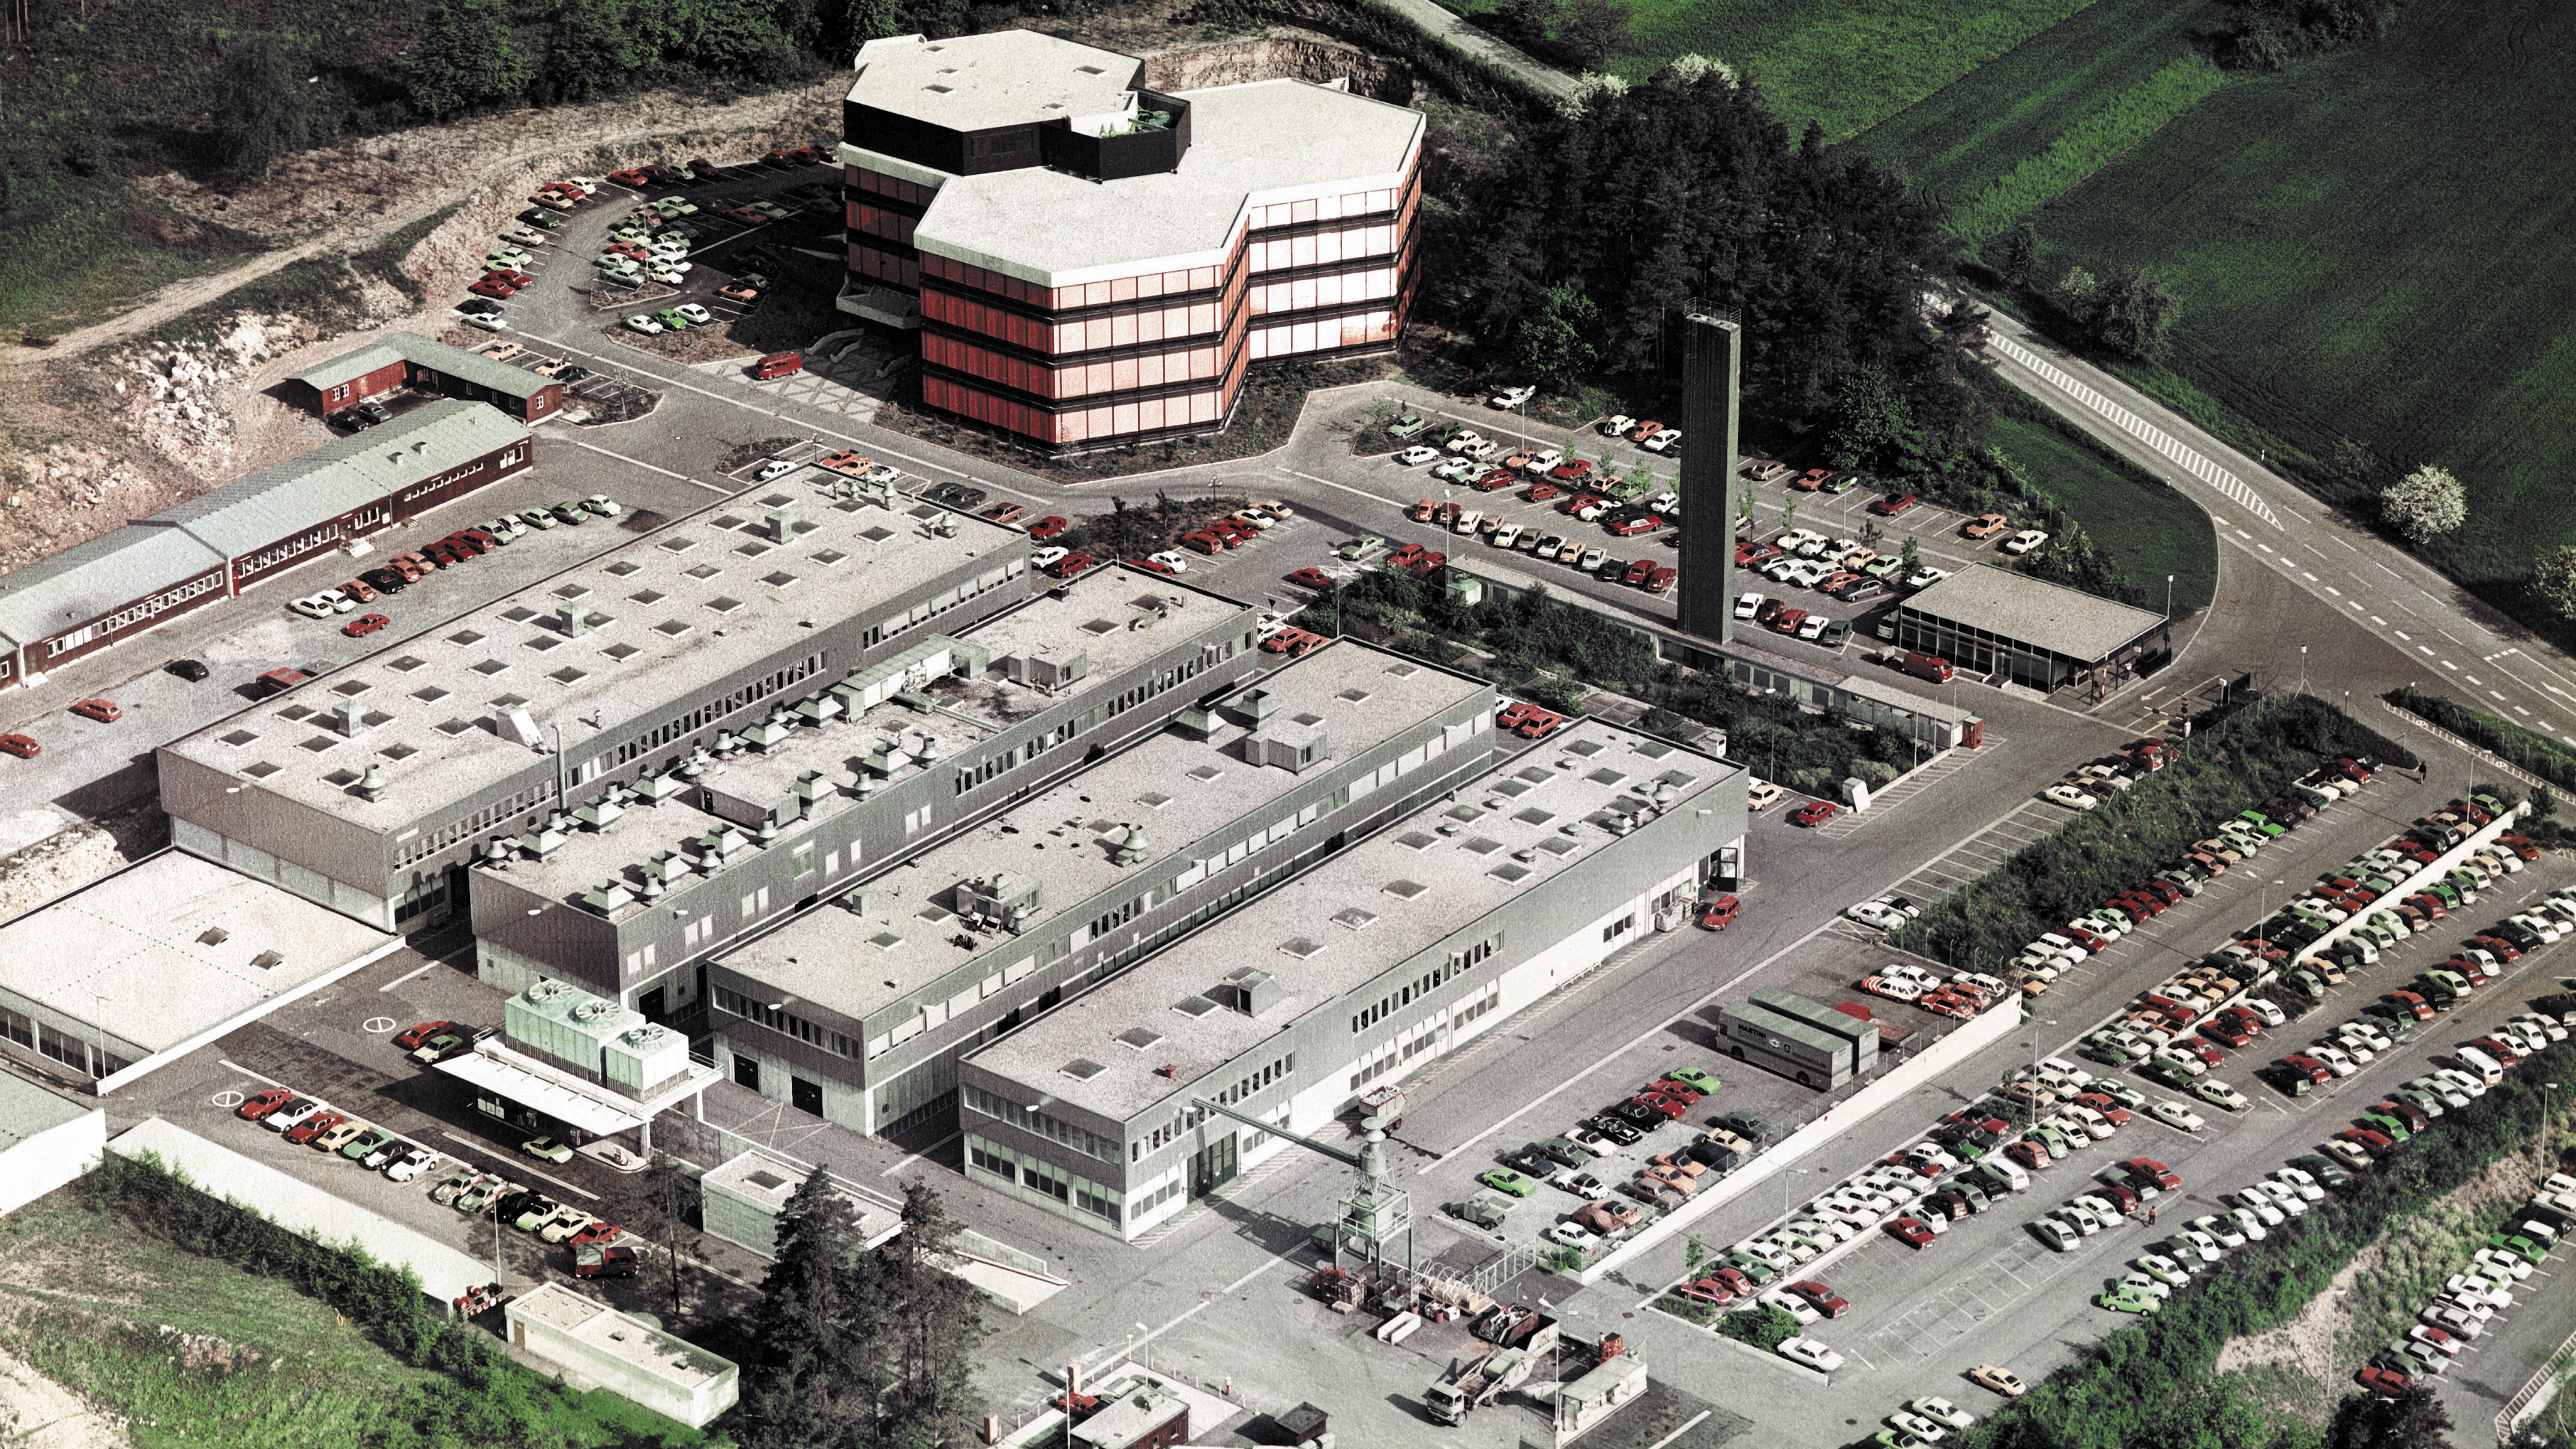 Centro de Desarrollo en Weissach, 1975, Porsche Engineering